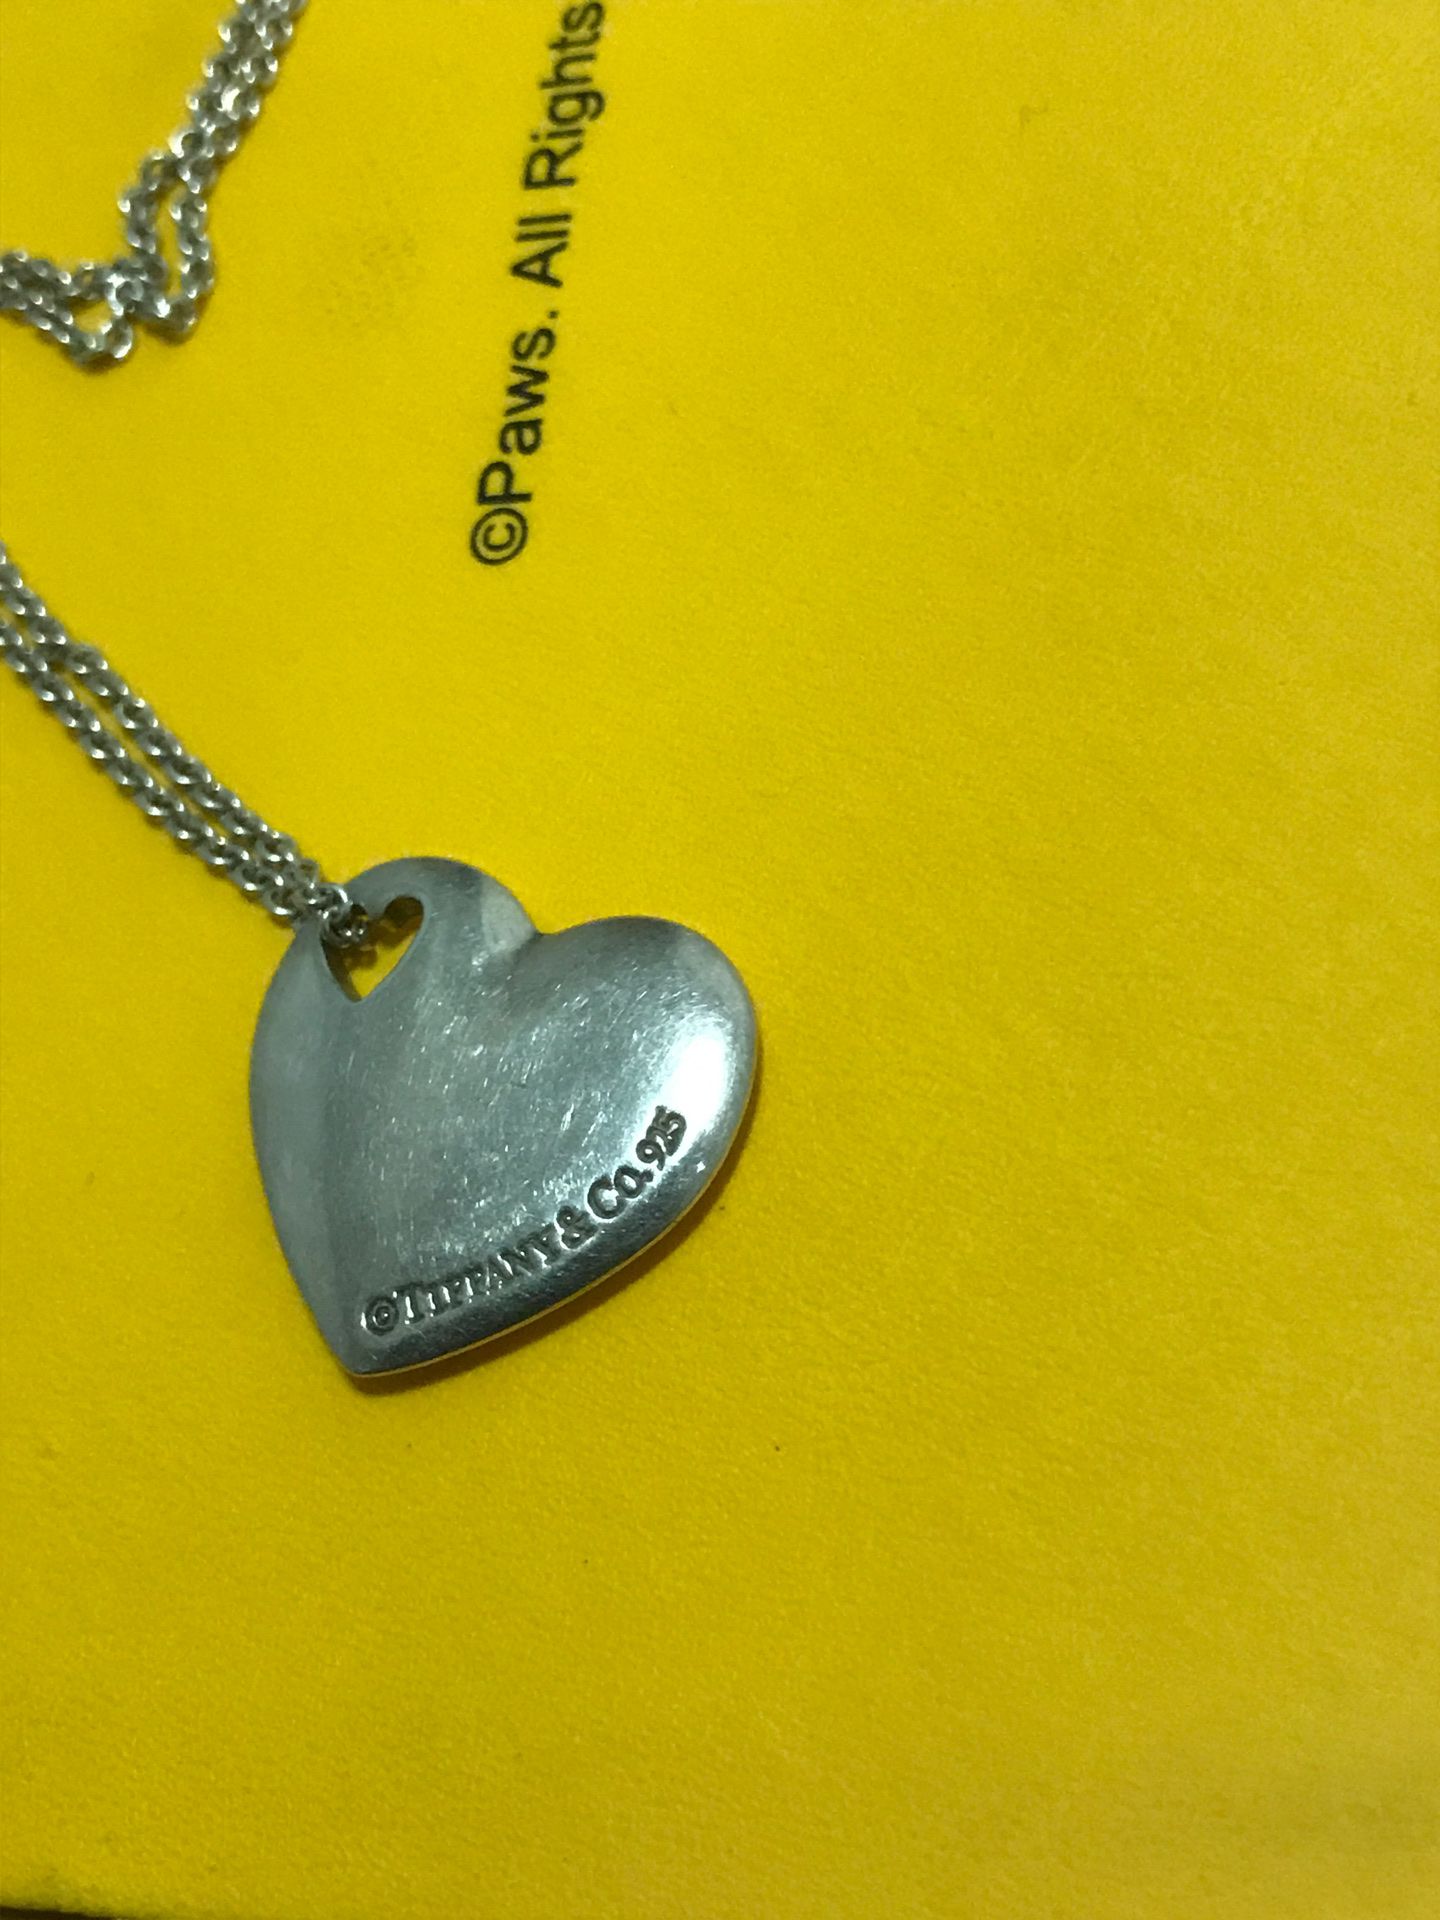 Tiffany heart charm necklace